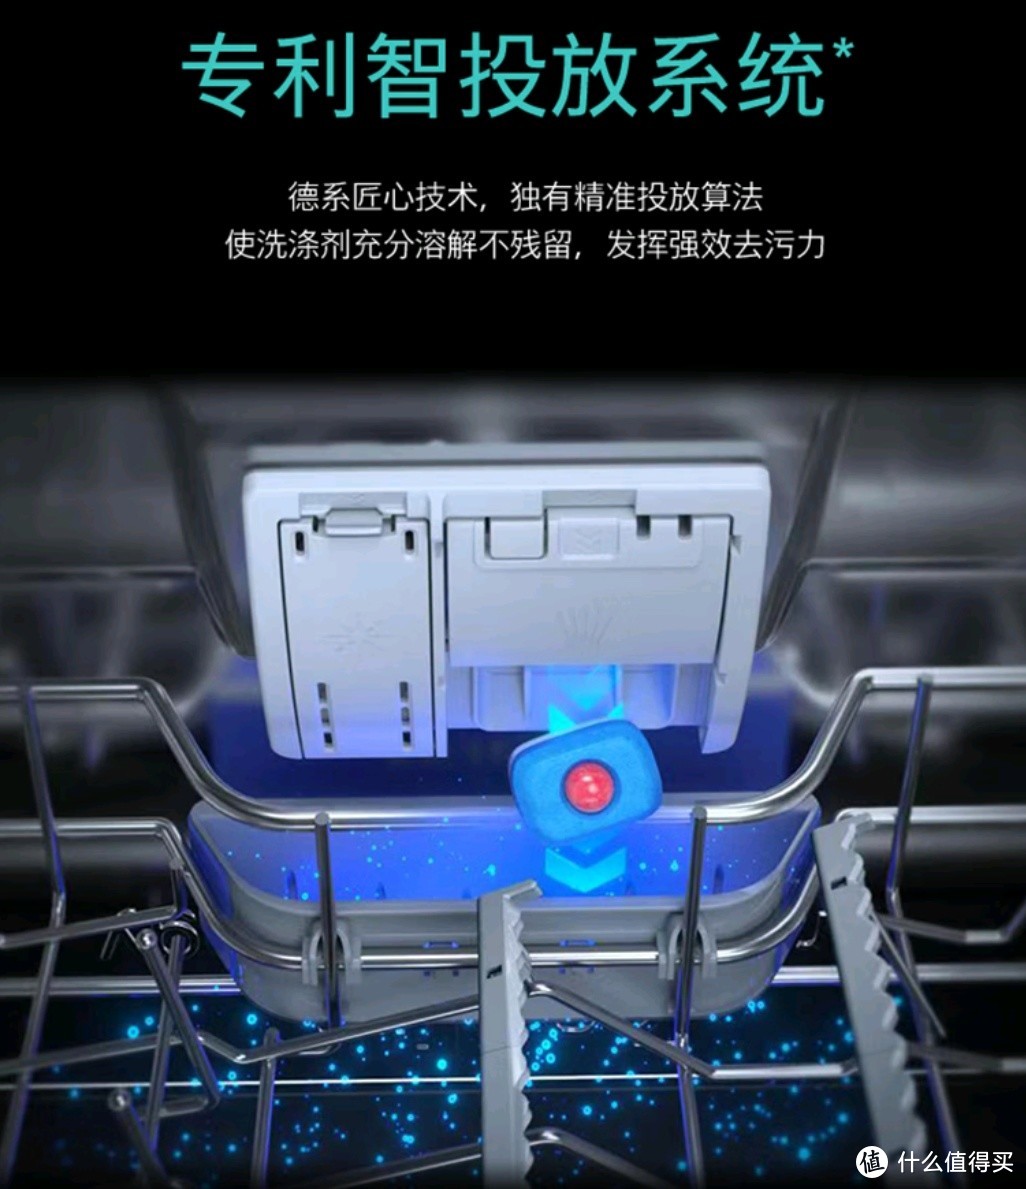 智能清洁魔法秀：西门子 12 套大容量除菌家用洗碗机 SJ236I01JC